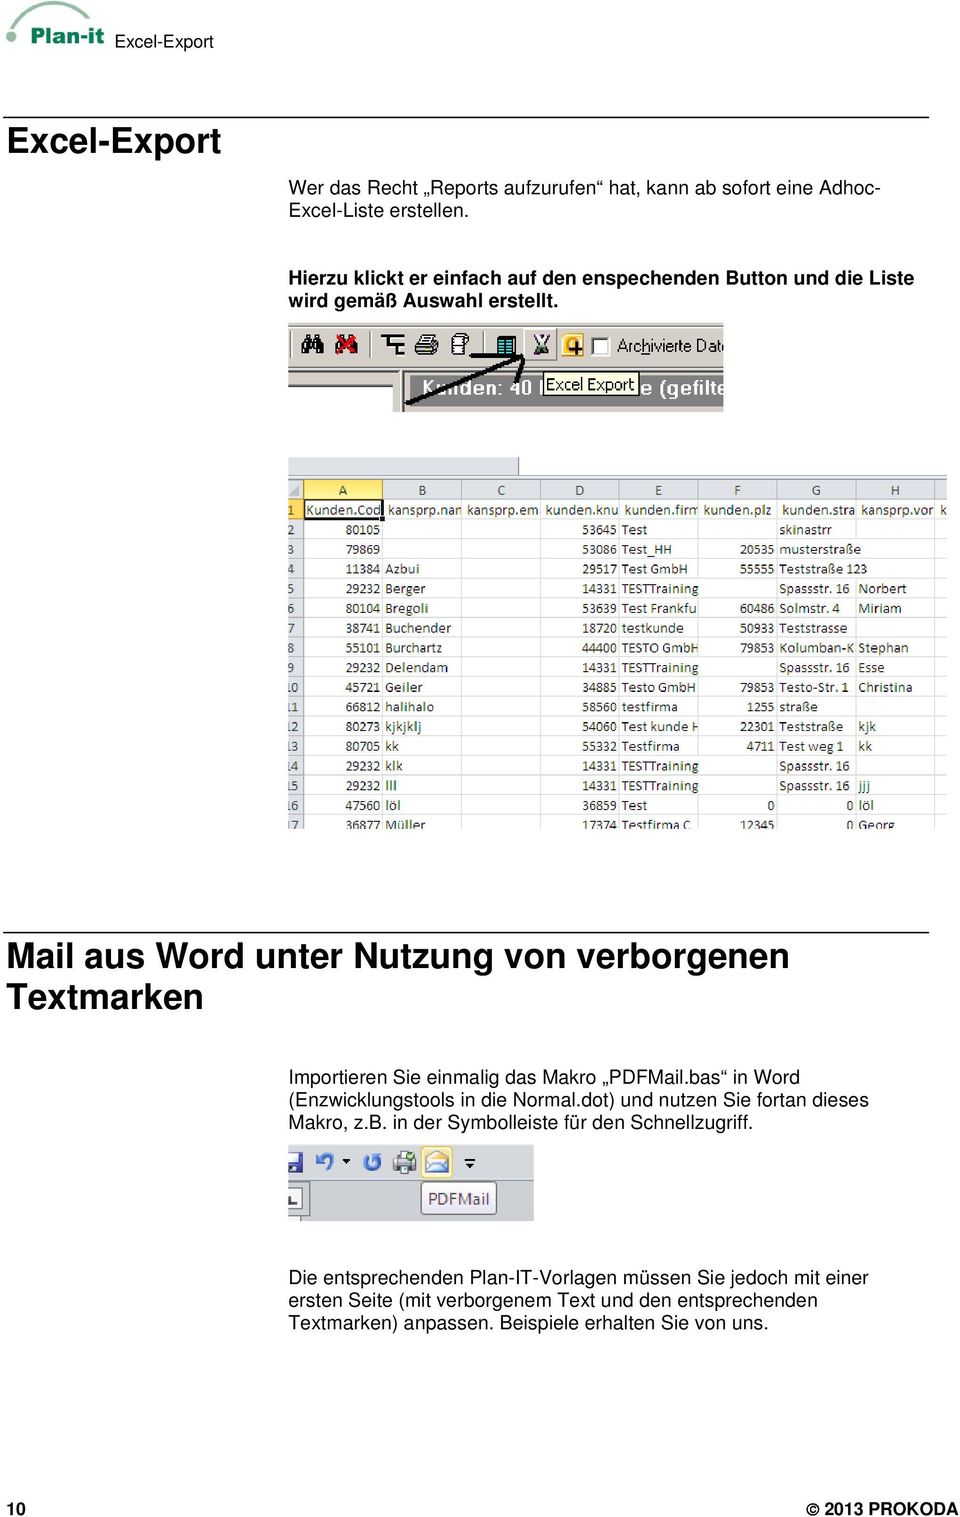 Mail aus Word unter Nutzung von verborgenen Textmarken Importieren Sie einmalig das Makro PDFMail.bas in Word (Enzwicklungstools in die Normal.